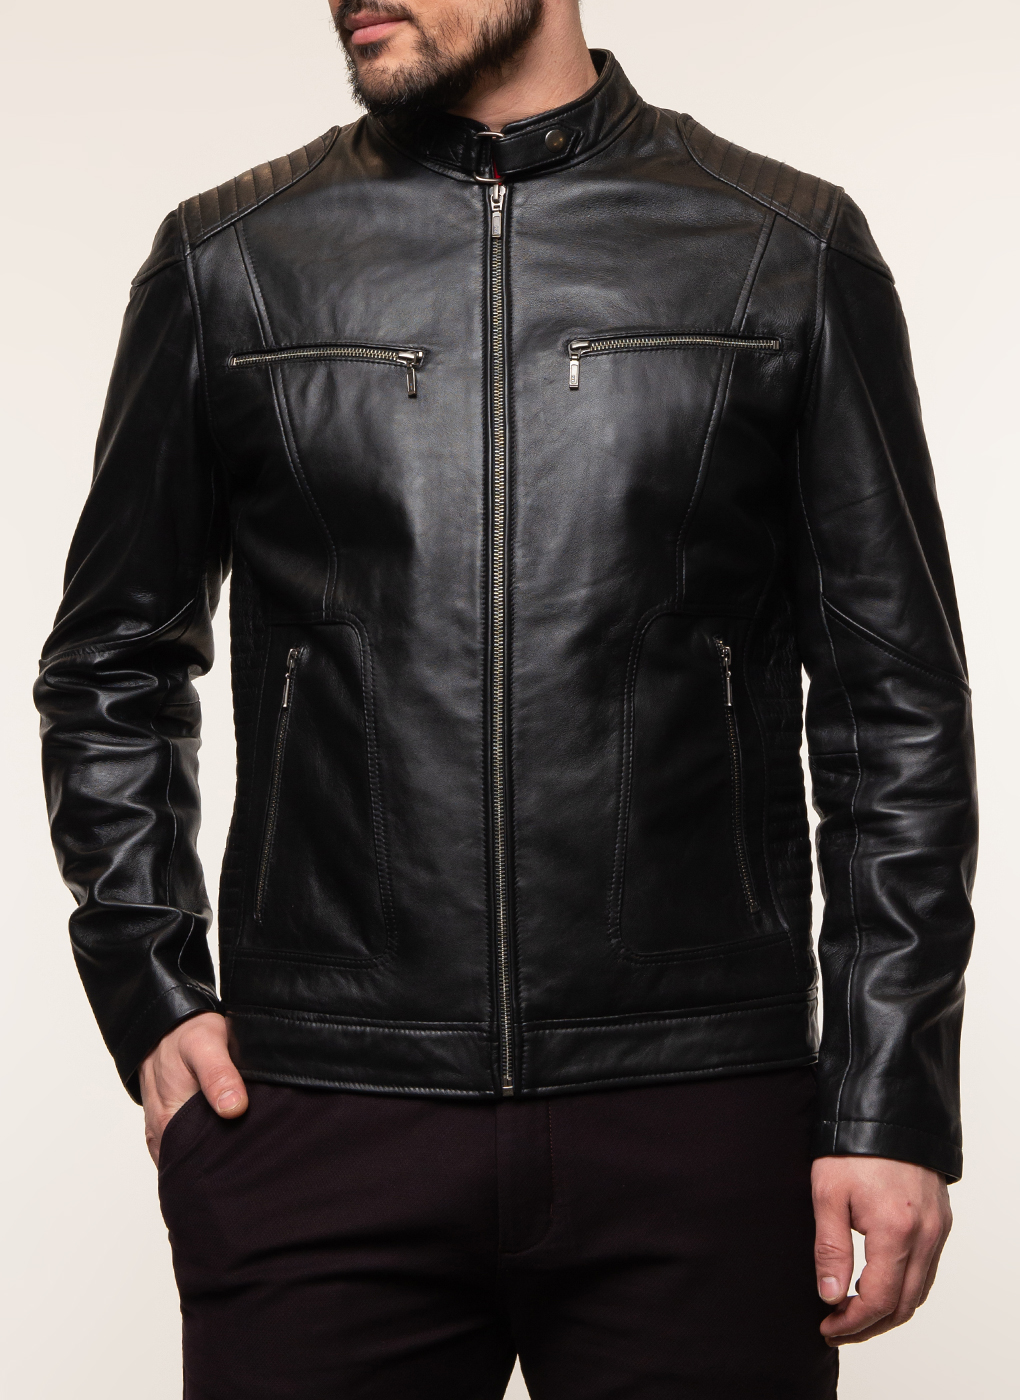 Кожаная куртка мужская Каляев 62648 черная 64 RU